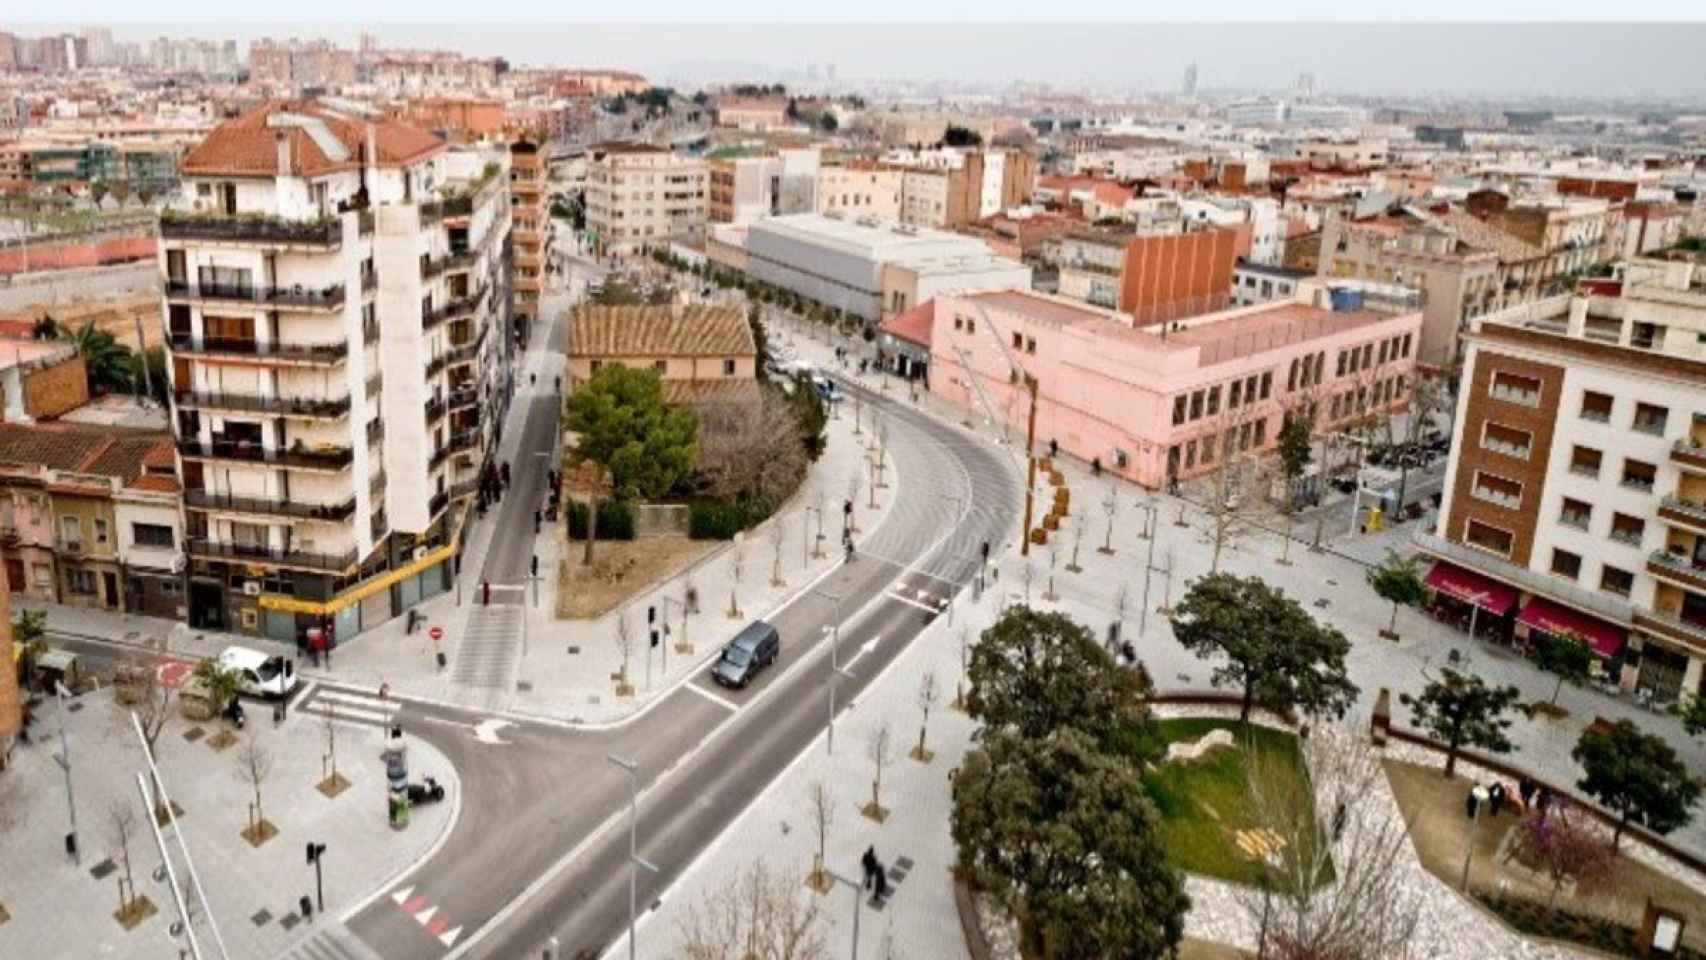 Vista aérea de Cornellà de Llobregat / AJUNTAMENT CORNELLÀ